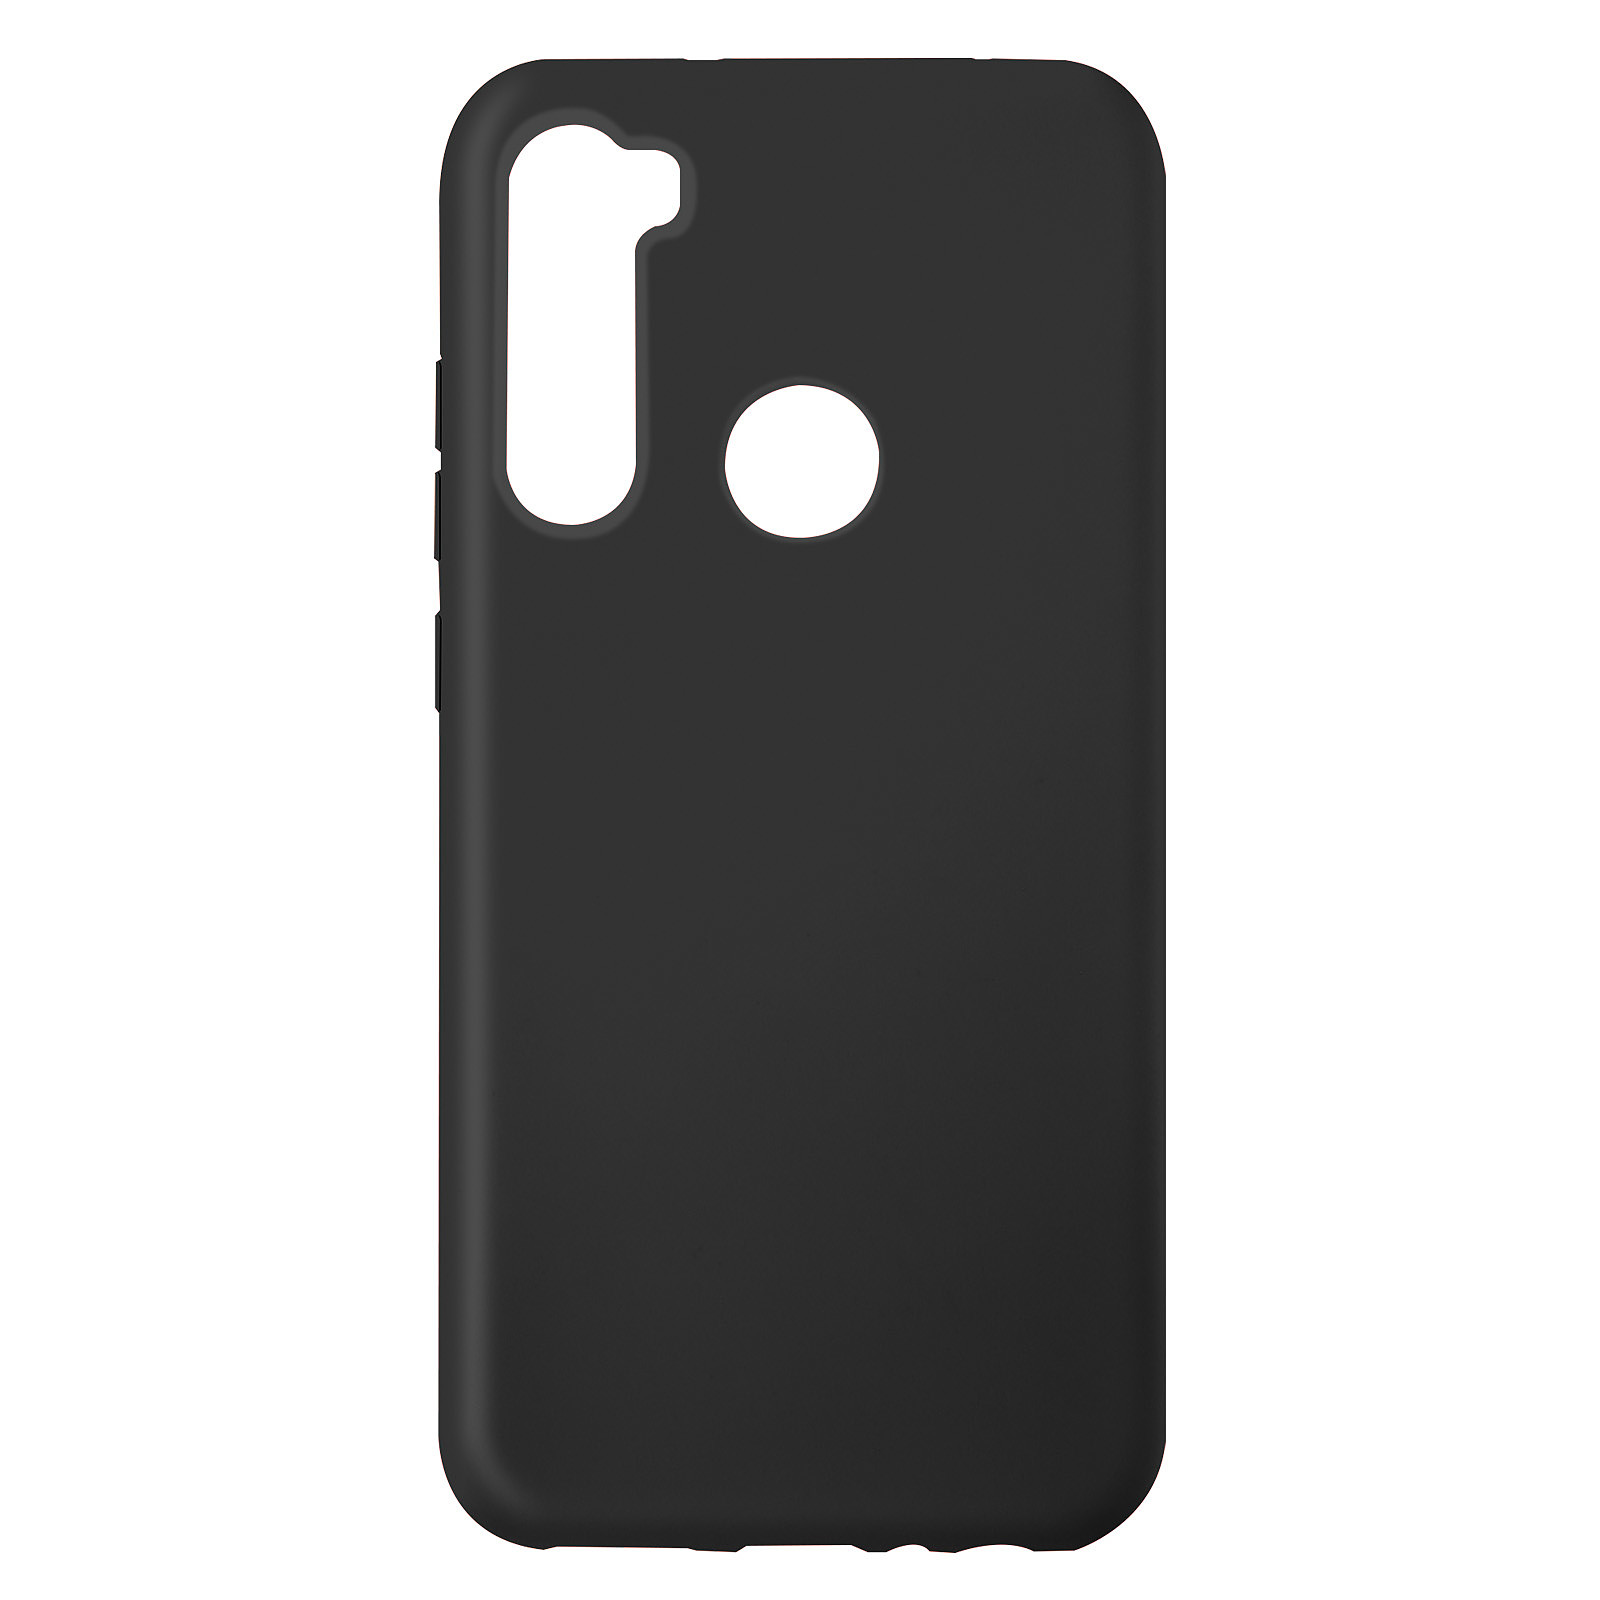 Avizar Coque pour Xiaomi Redmi Note 8 Silicone Semi-rigide Finition Soft-touch Fine Noir - Coque telephone Avizar